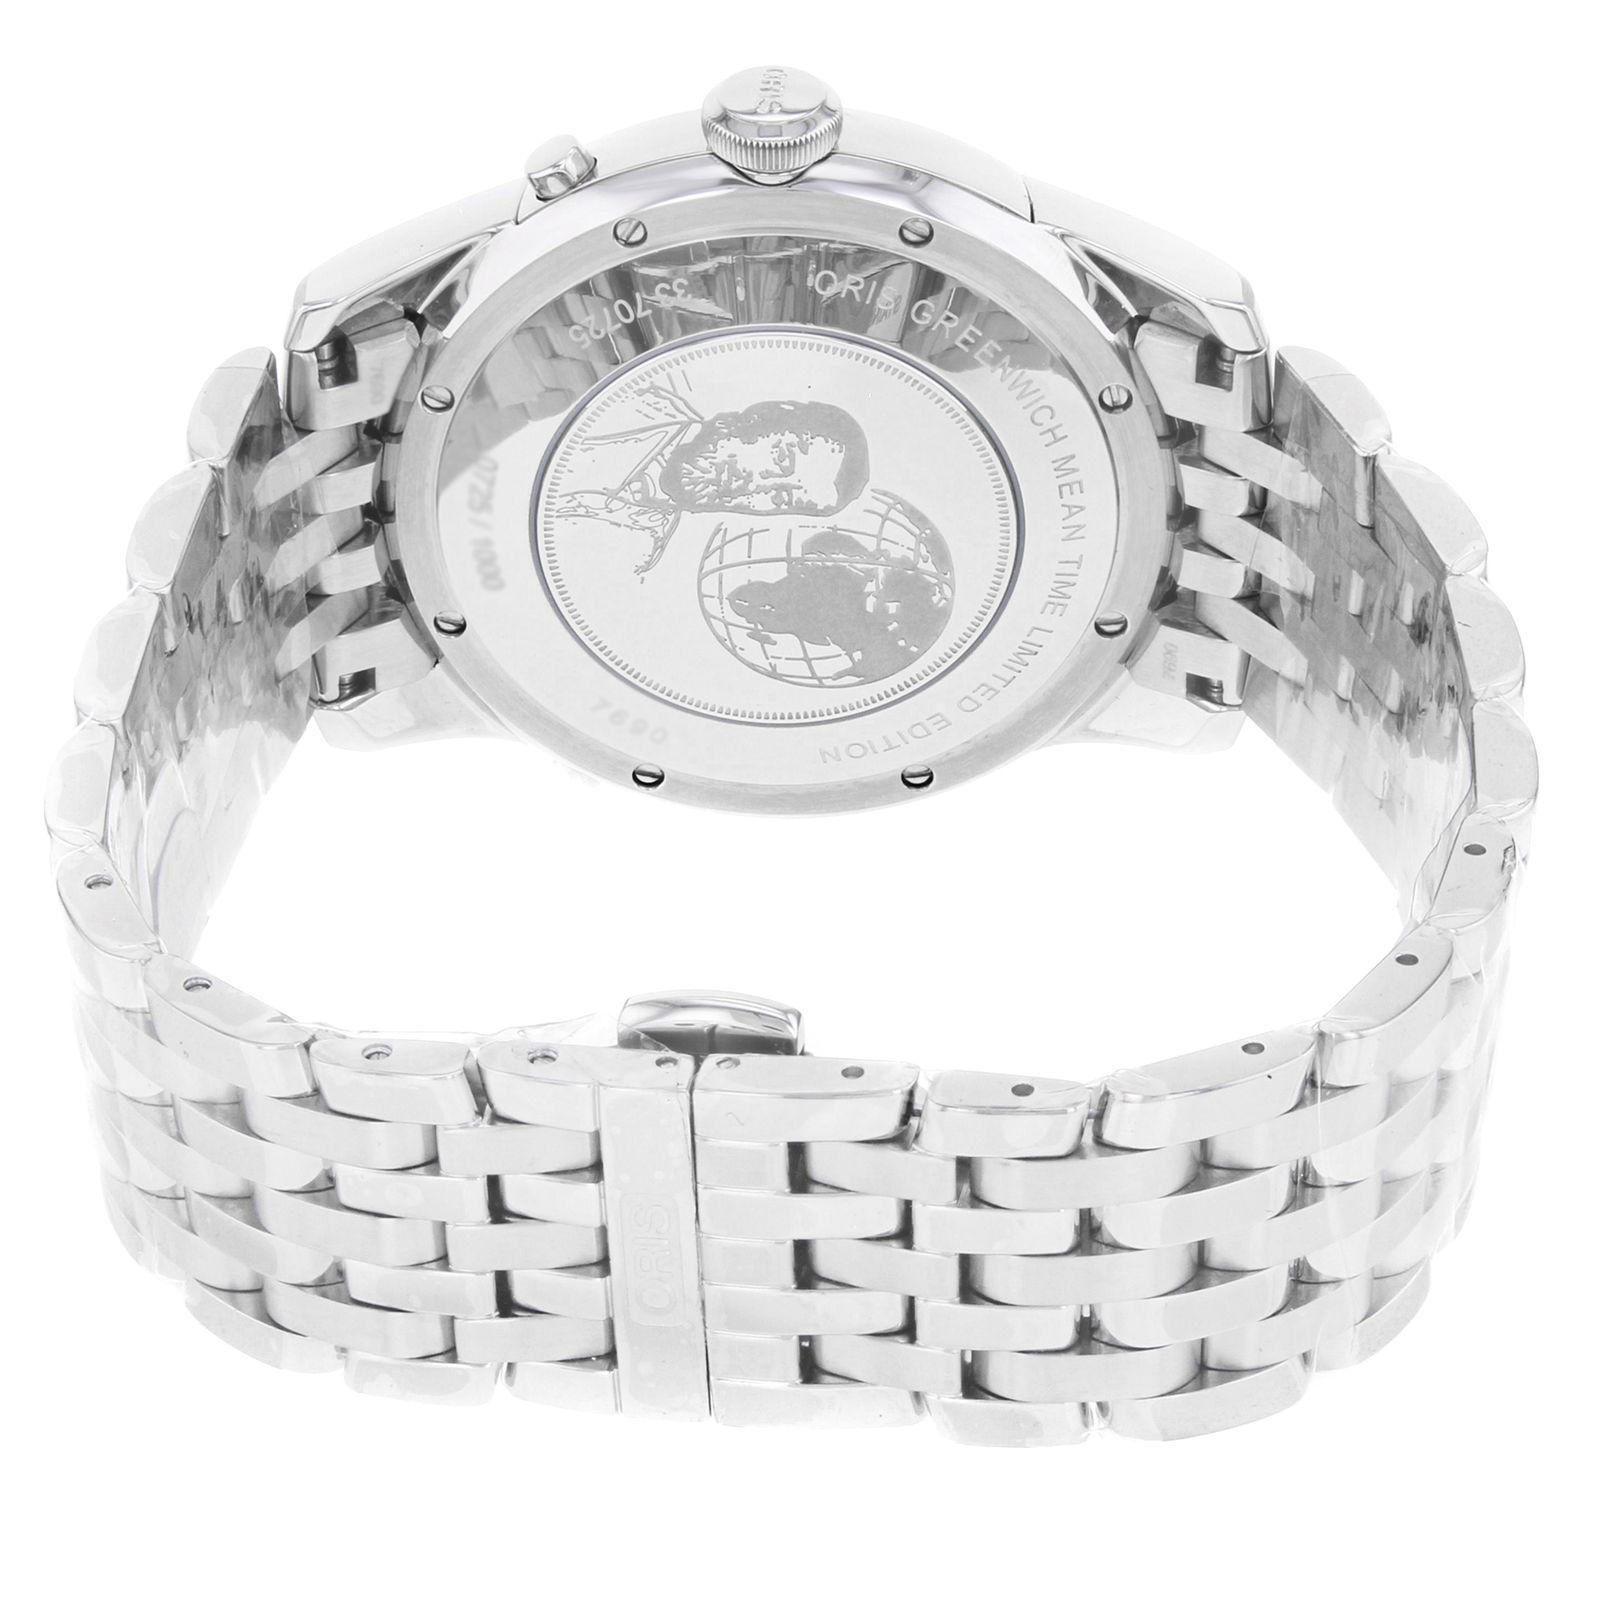 Oris Artelier Steel Silver Limited Edition Automatic Men's Watch 690 7690 4081 2